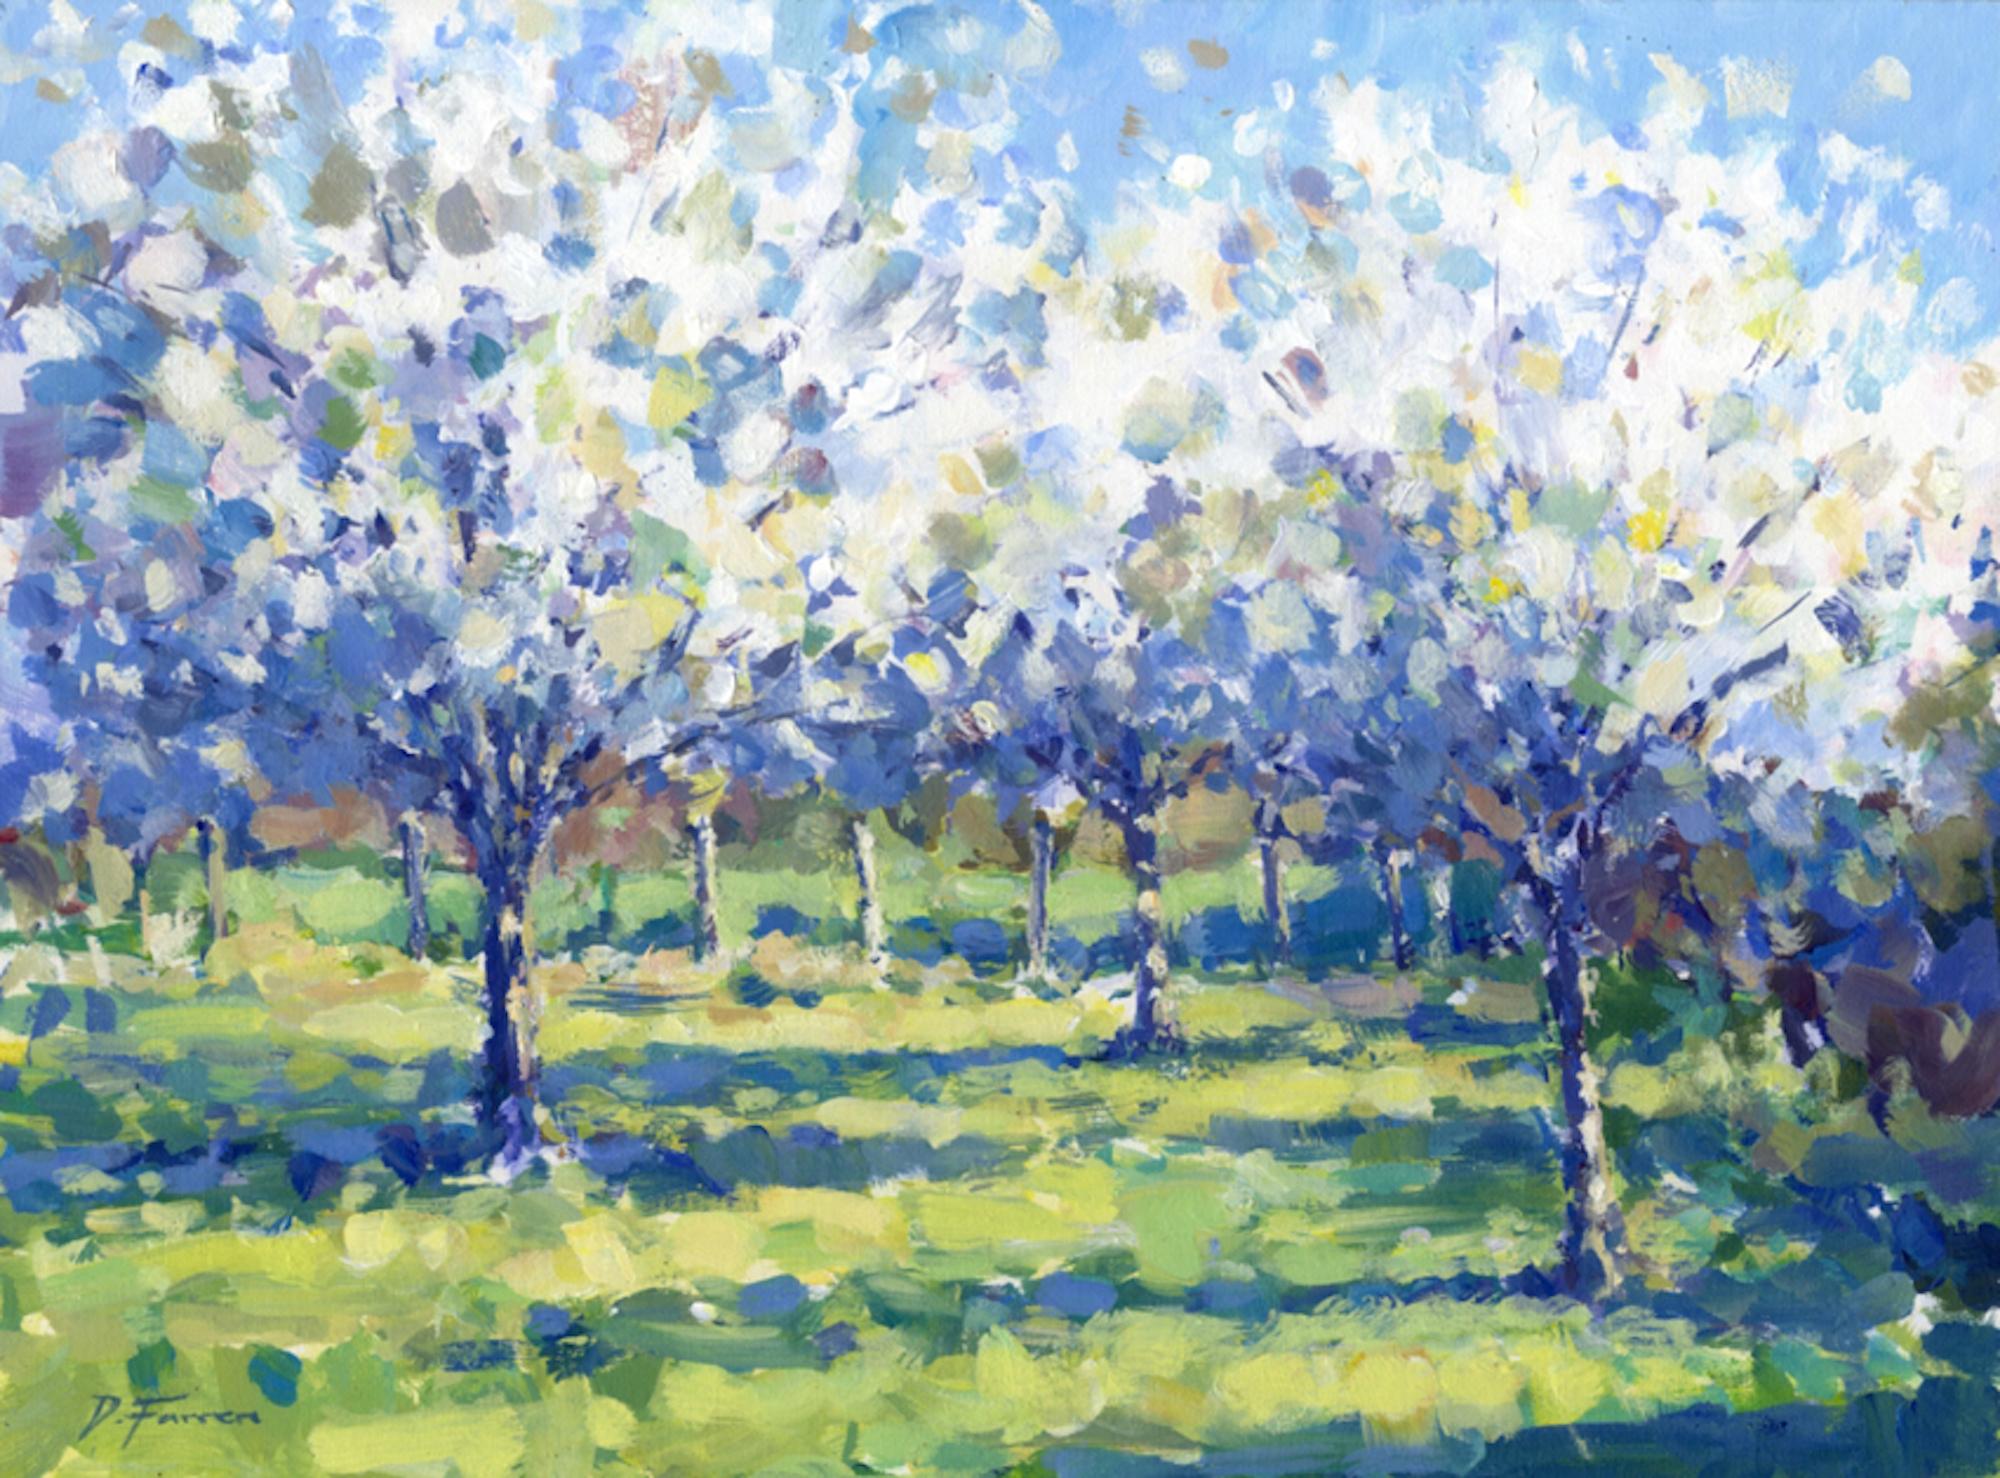 David Farren Landscape Painting – Orchard Blossom - original impressionistische Landschaftsmalerei - zeitgenössische Kunst